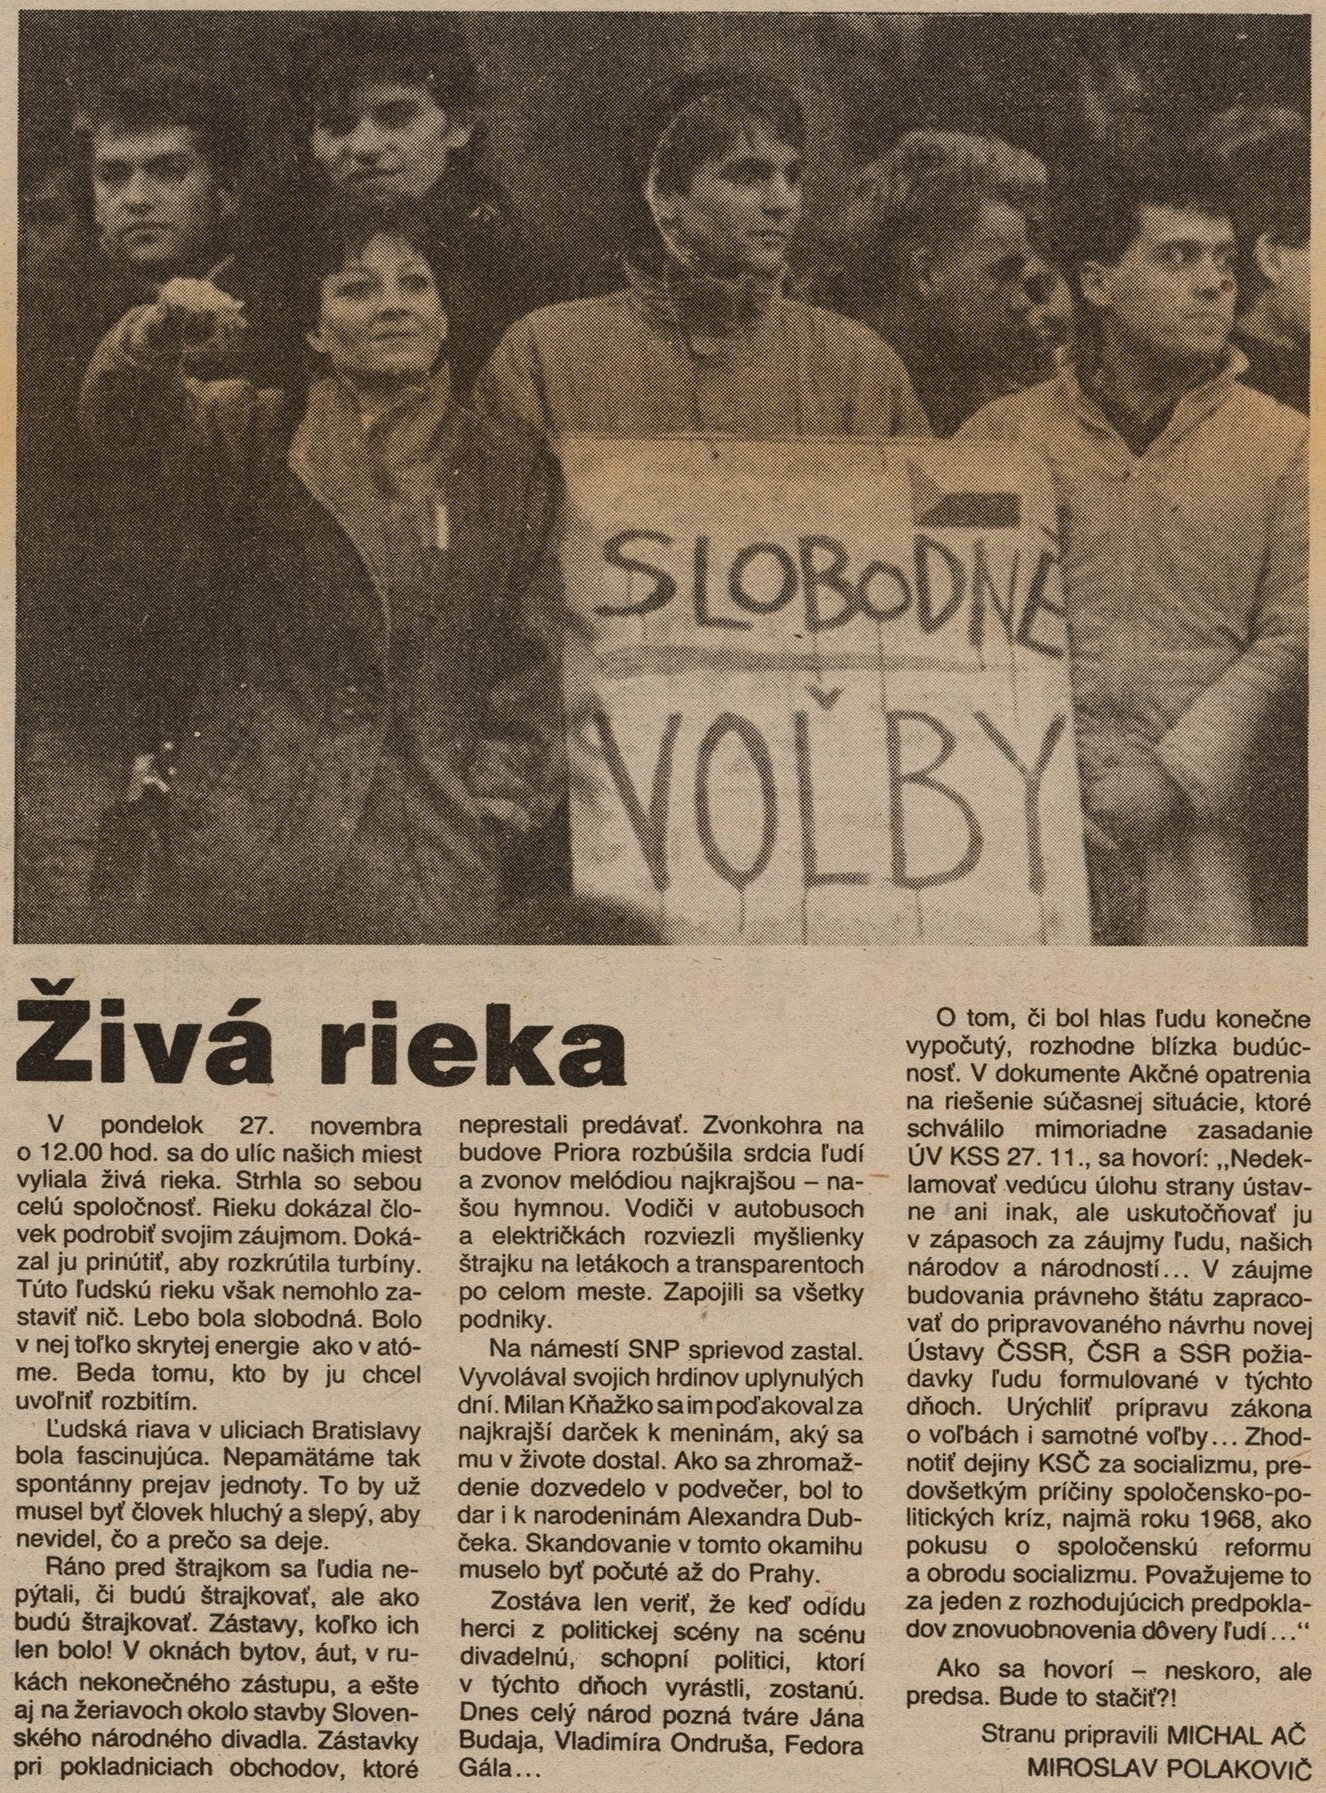 Michal Ač, Miroslav Polakovič, Živá rieka (článok v periodiku Nedeľná pravda). 1989. Archív Dušana Kobliška